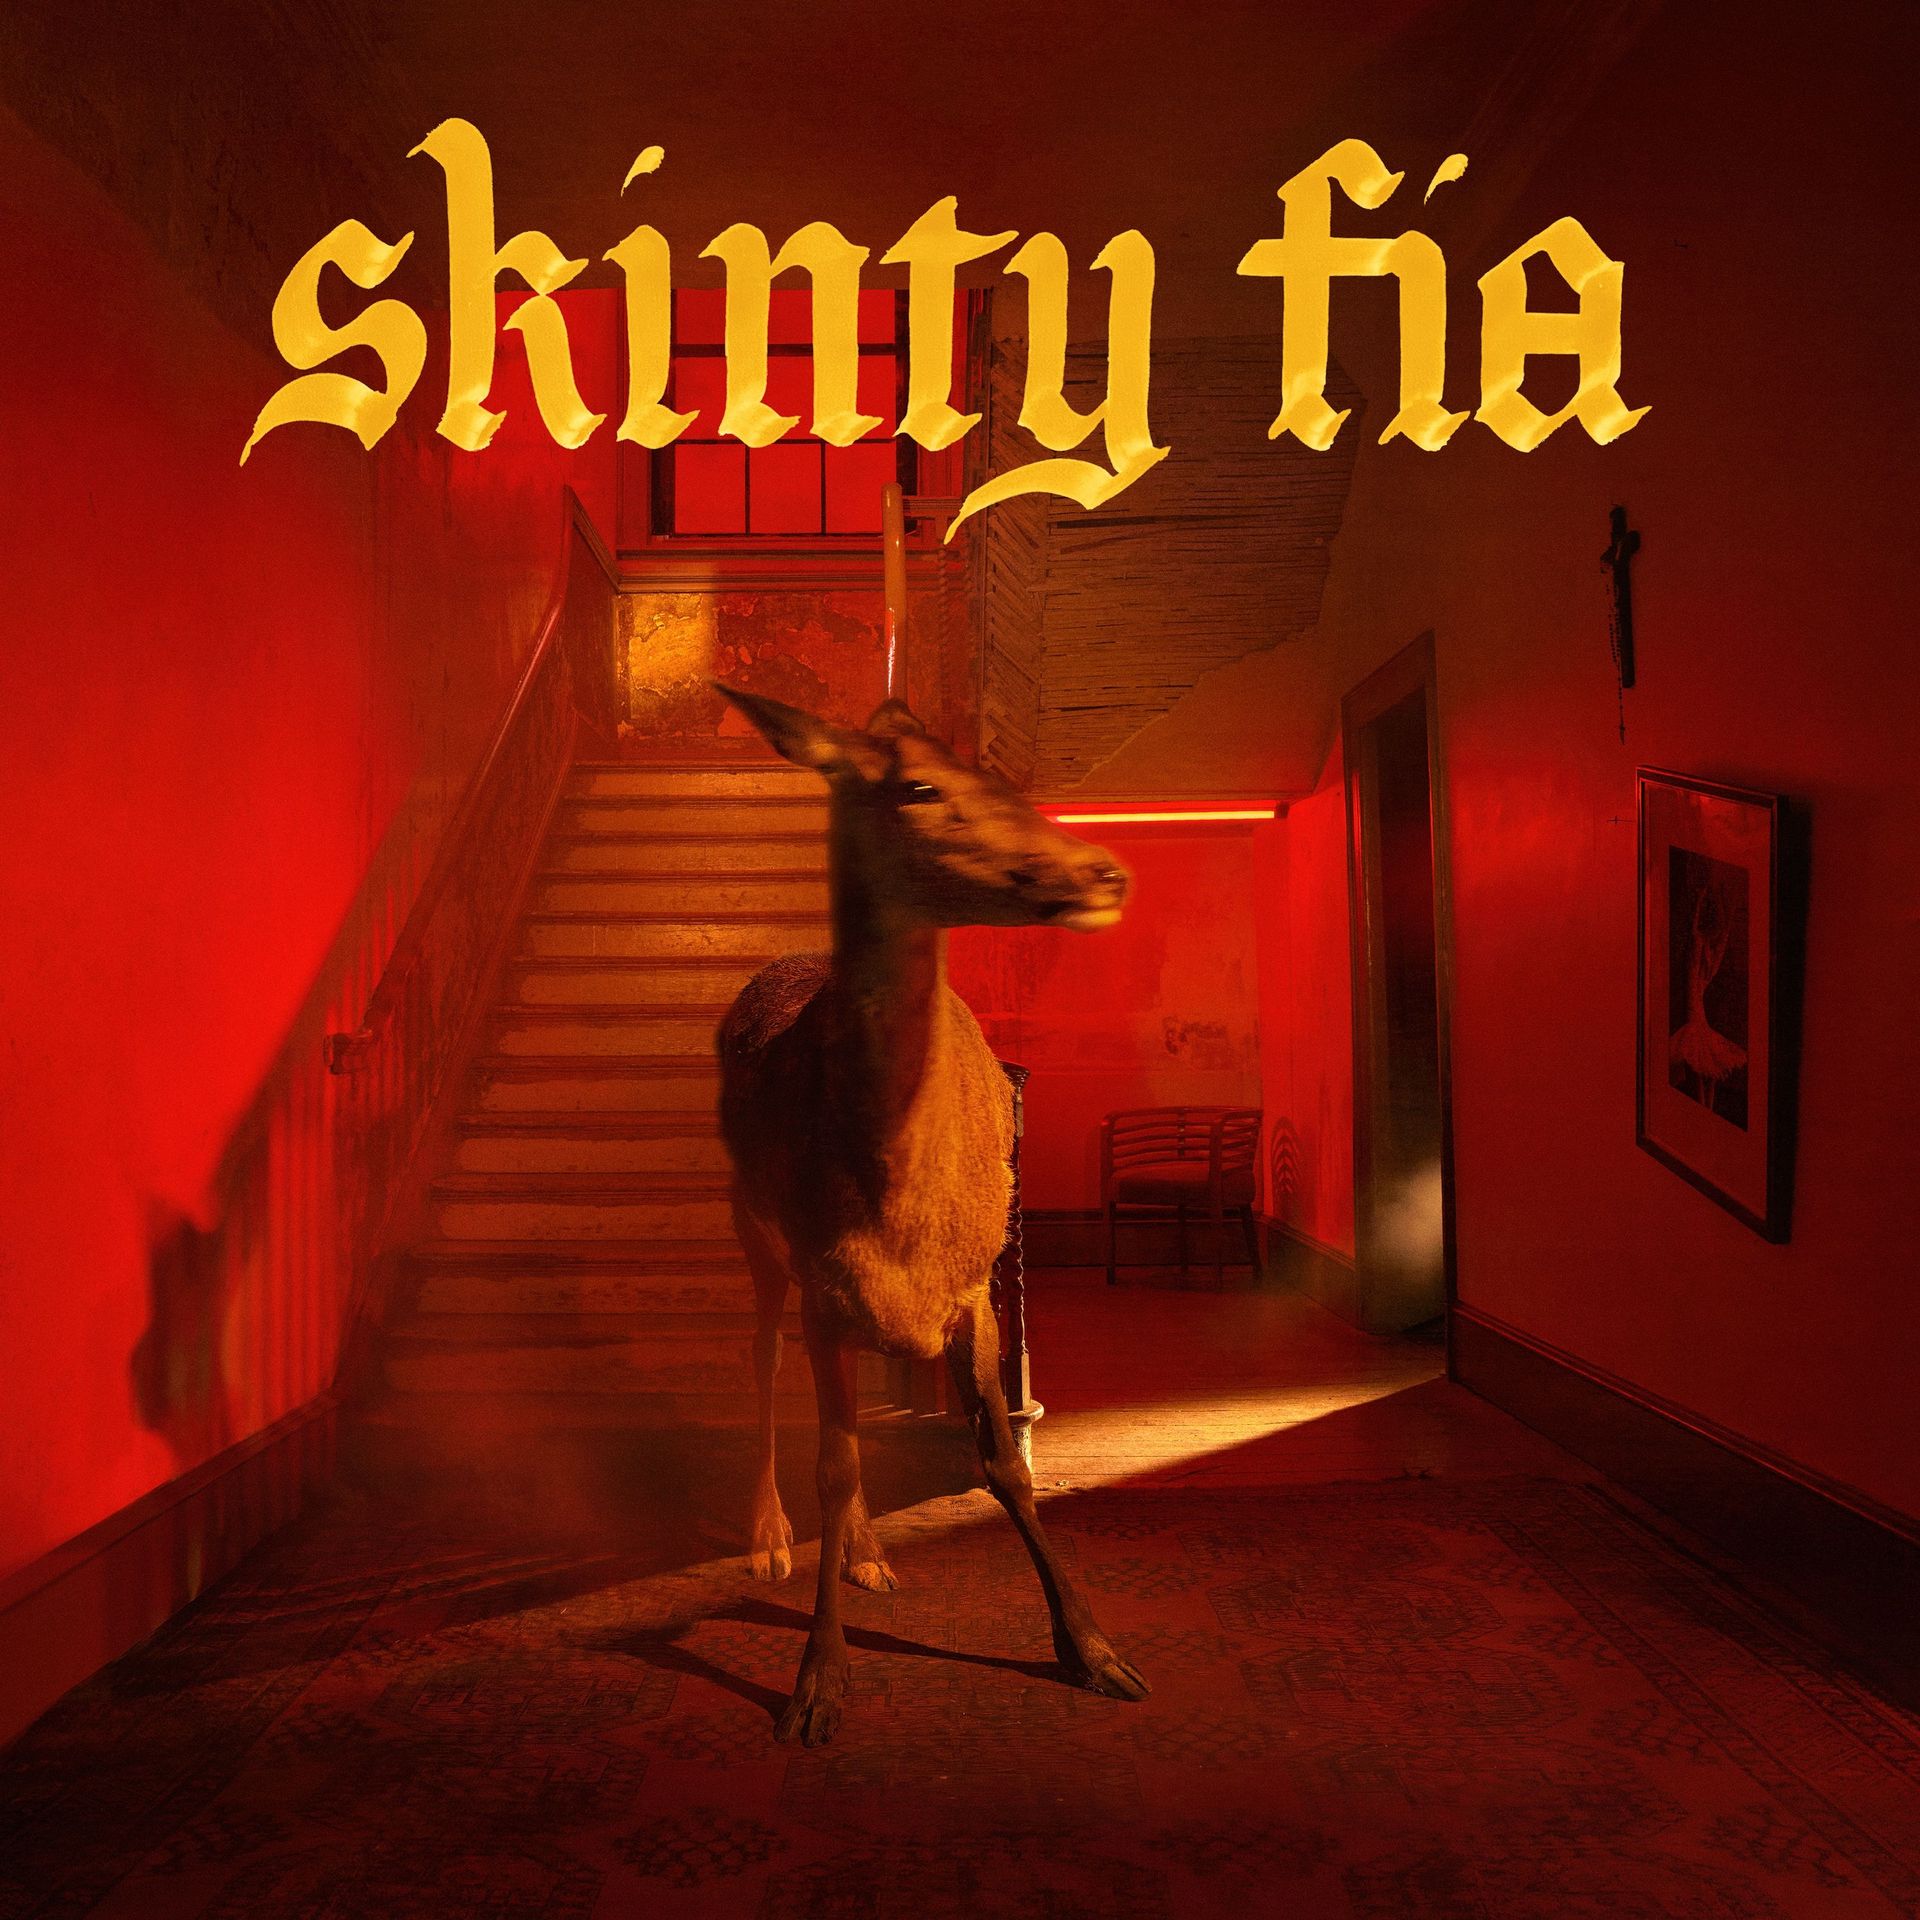 "Skinty Fia" est une manière de jurer en gaélique que l’on pourrait traduire par "la damnation du cerf".